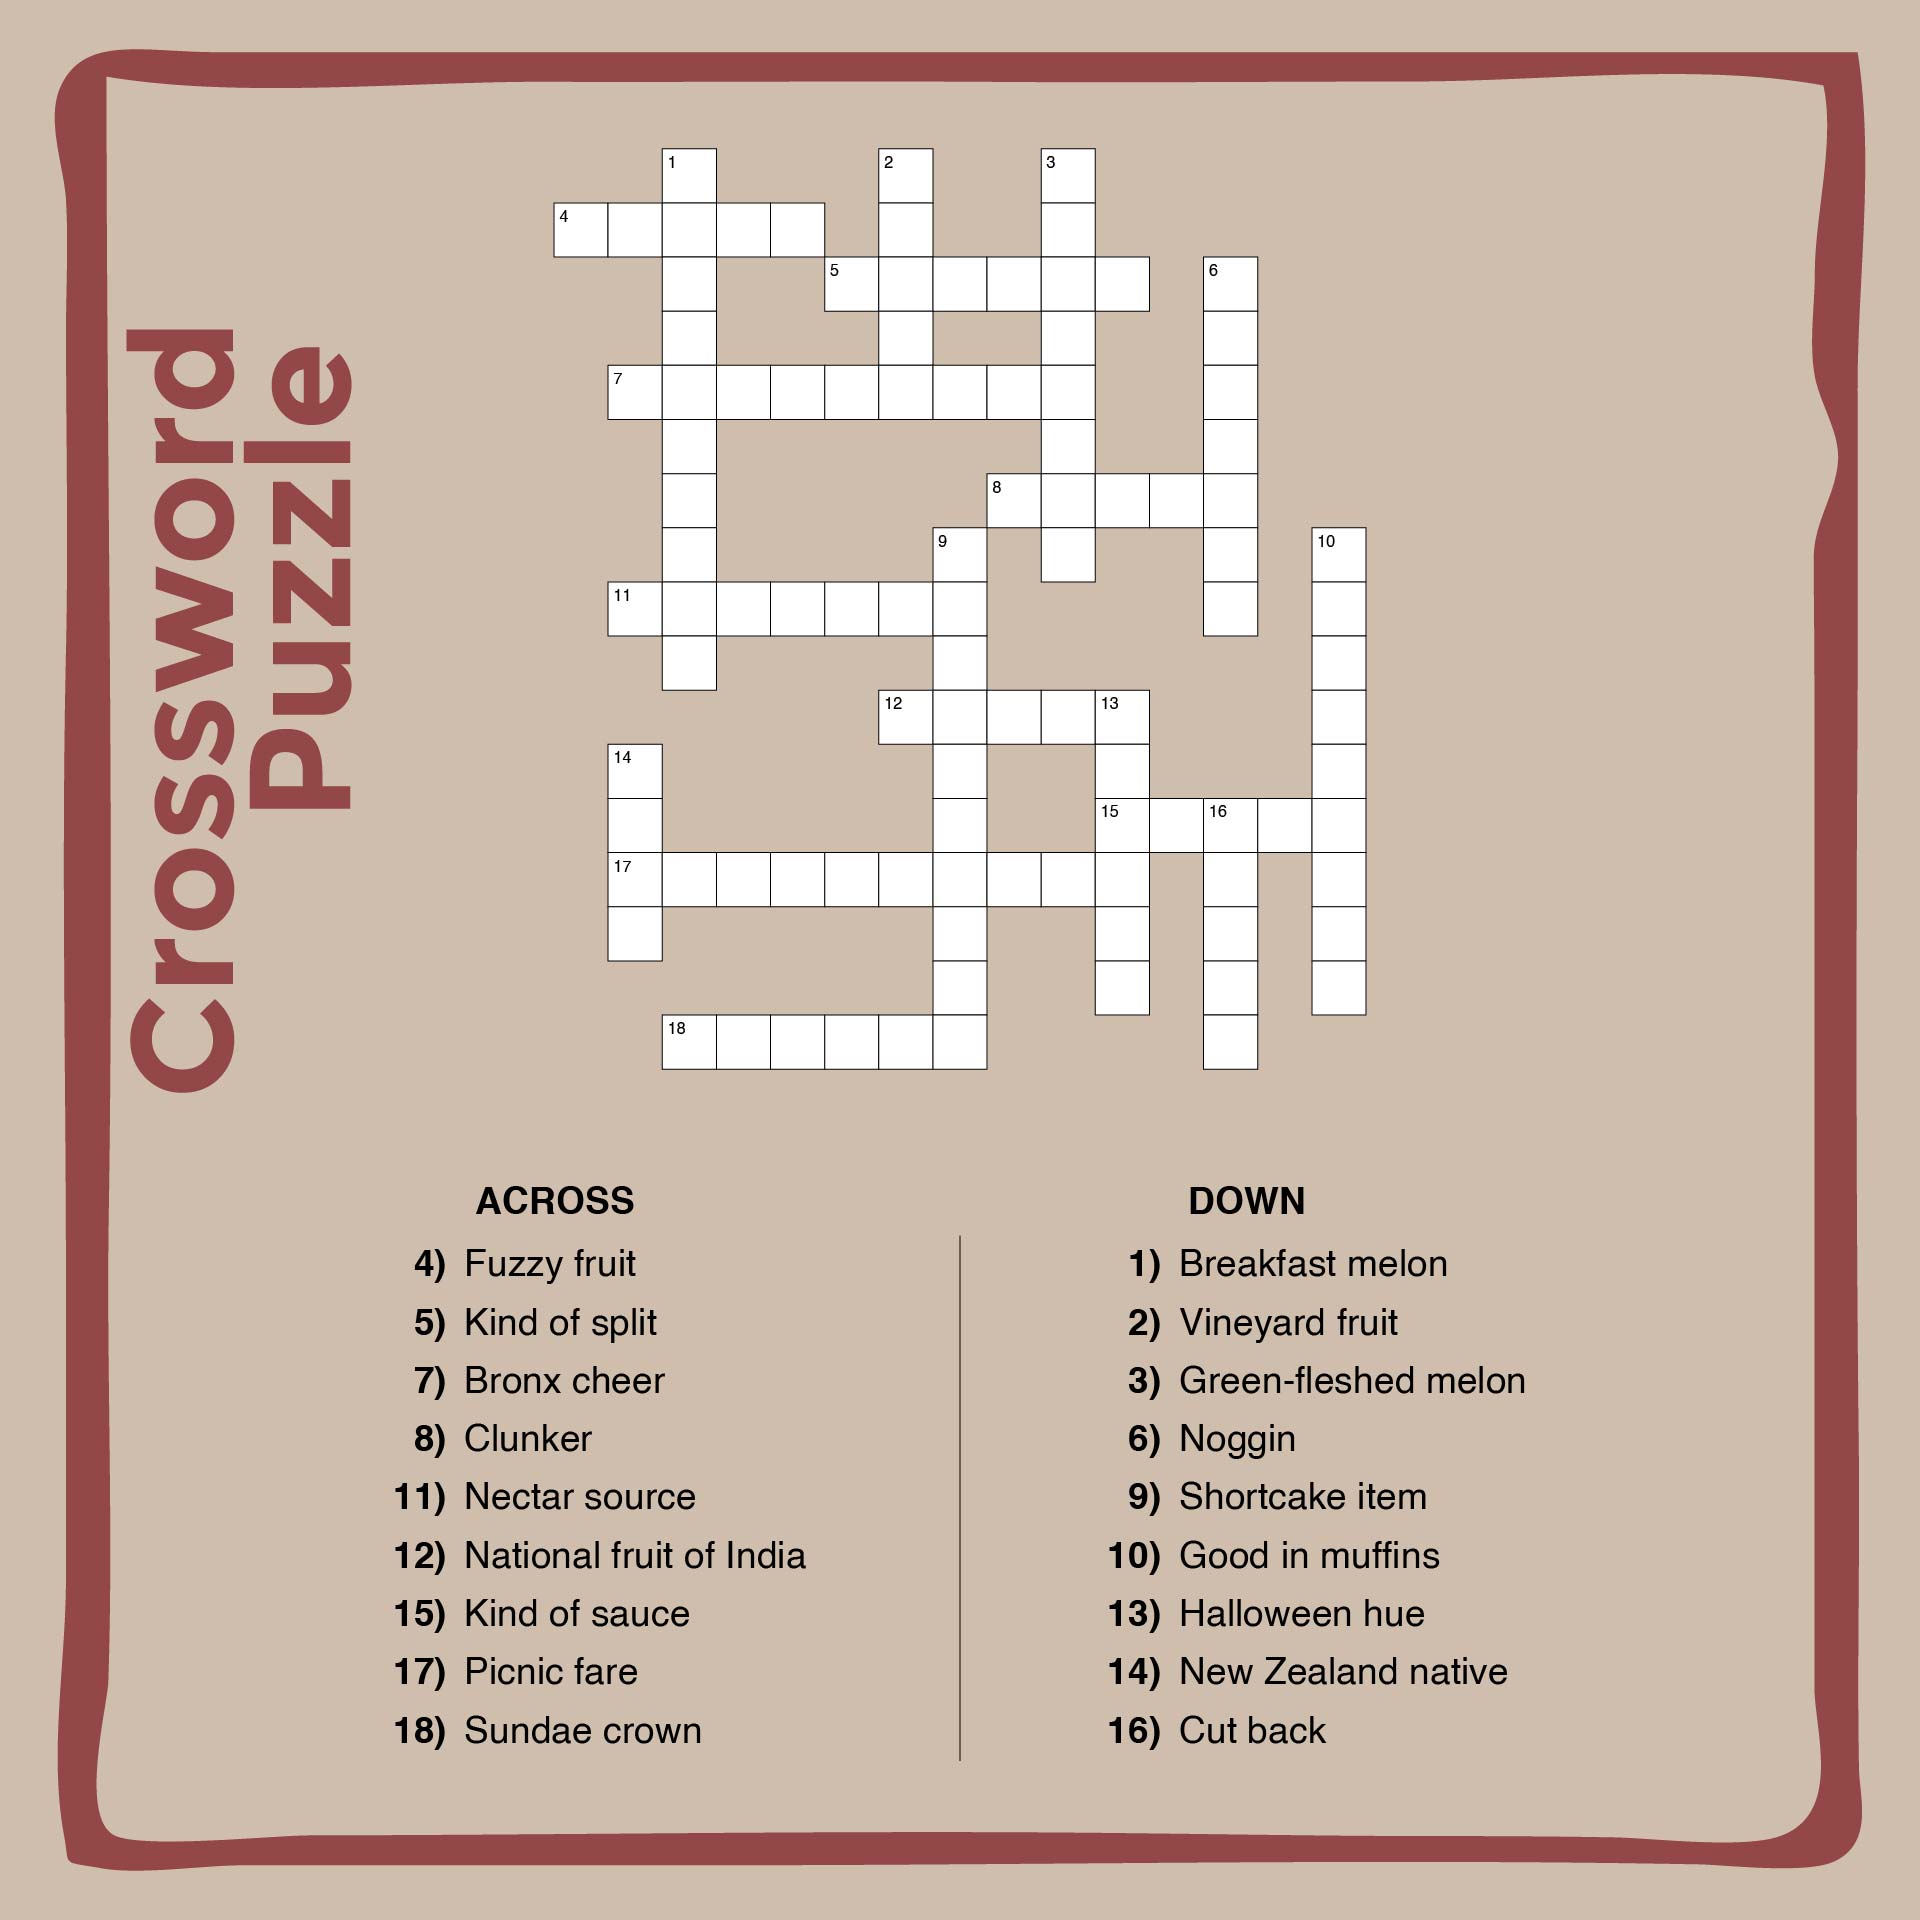 Printable Crossword Puzzles